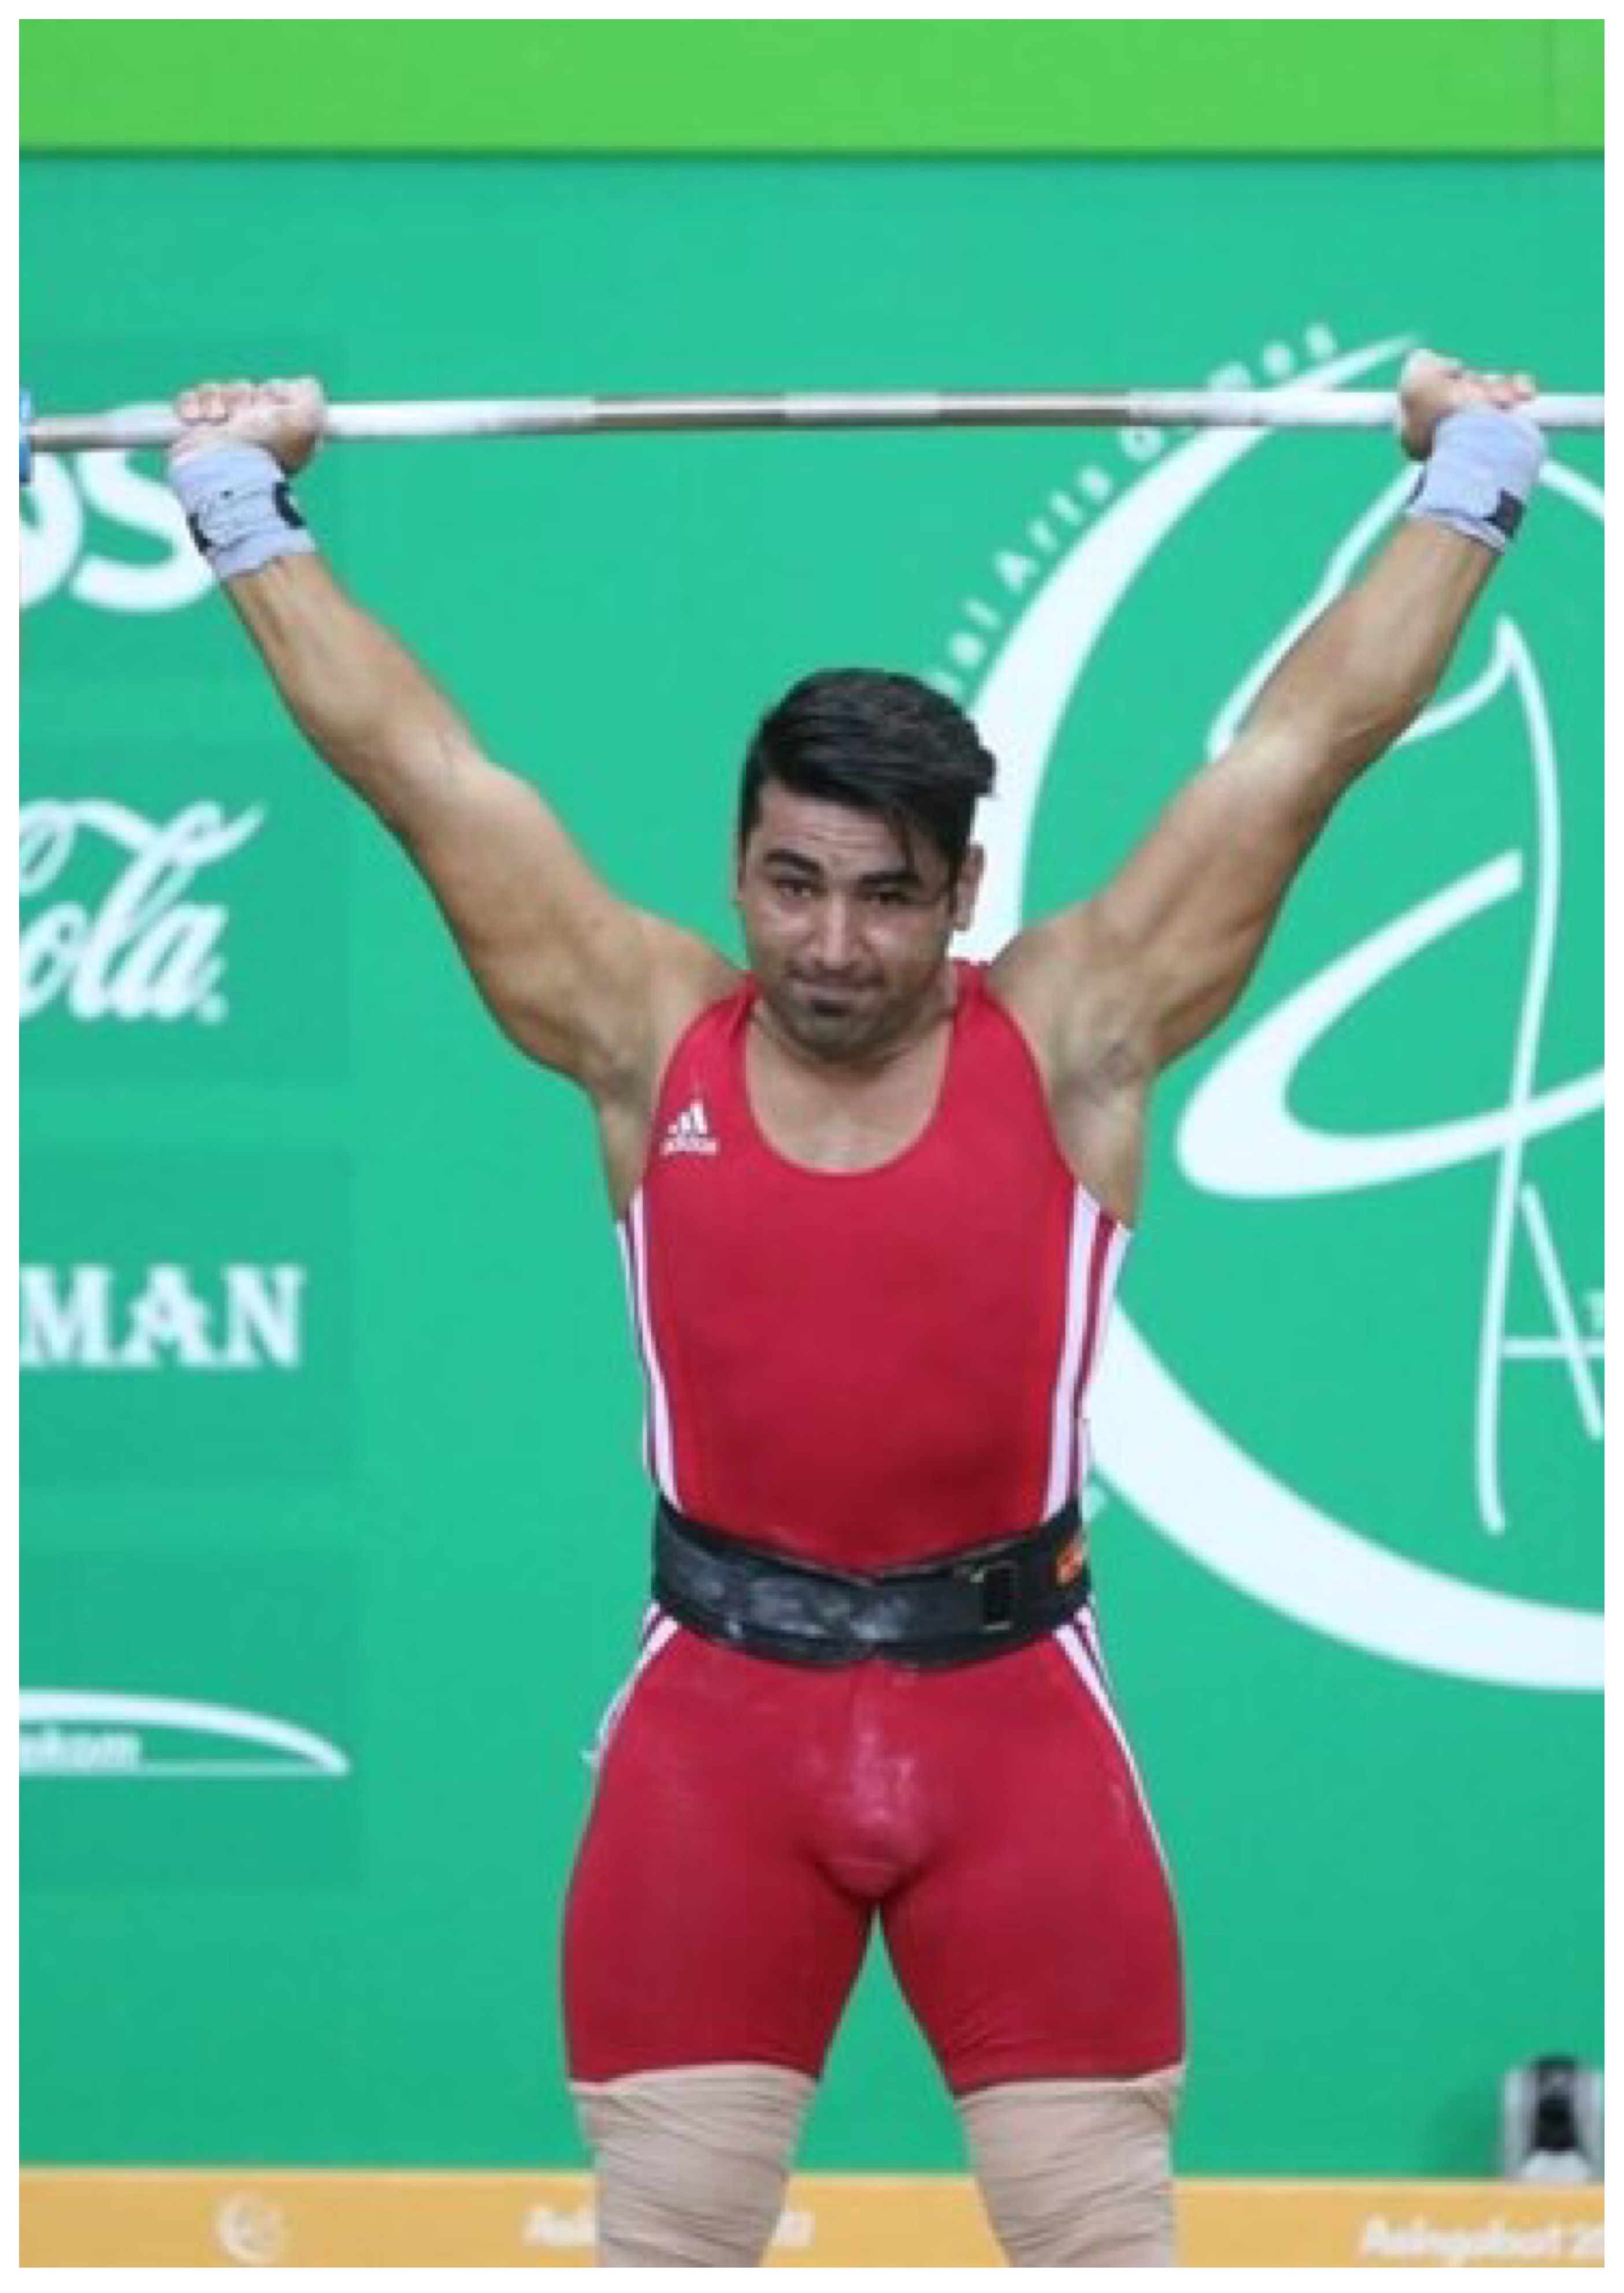 کولاک دو پولادمرد بروجردی با طلا و نقره باران قهرمانی ۲۰۱۸دنیا/دسته۱۰۲کیلوگرم مبهوت قدرت ایرانی